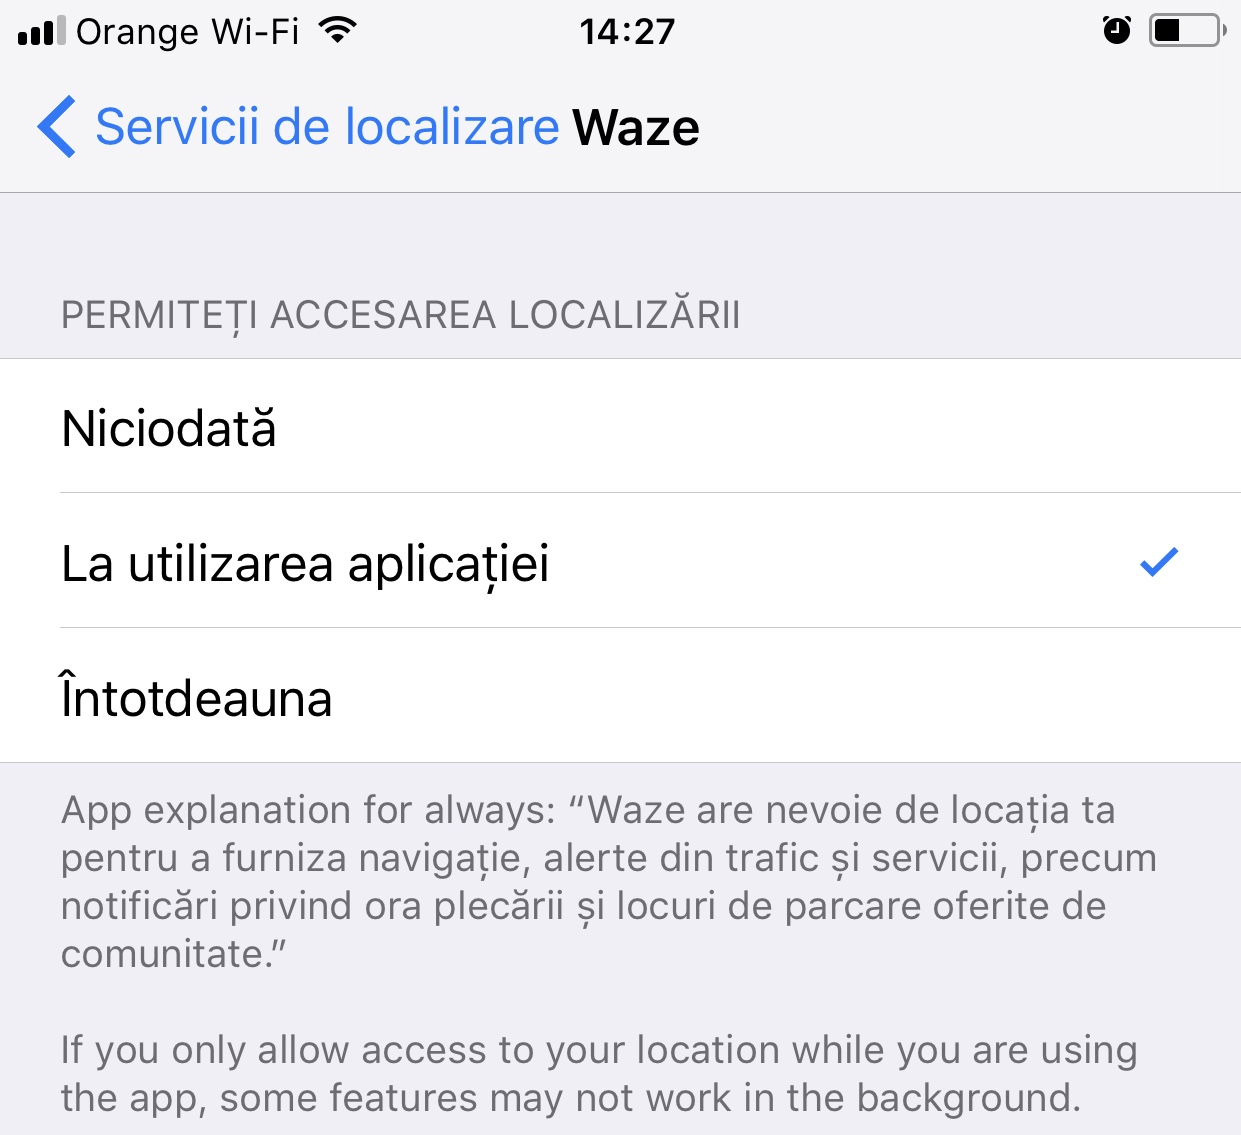 Verrouillage GPS permanent de l'iPhone sous iOS 11